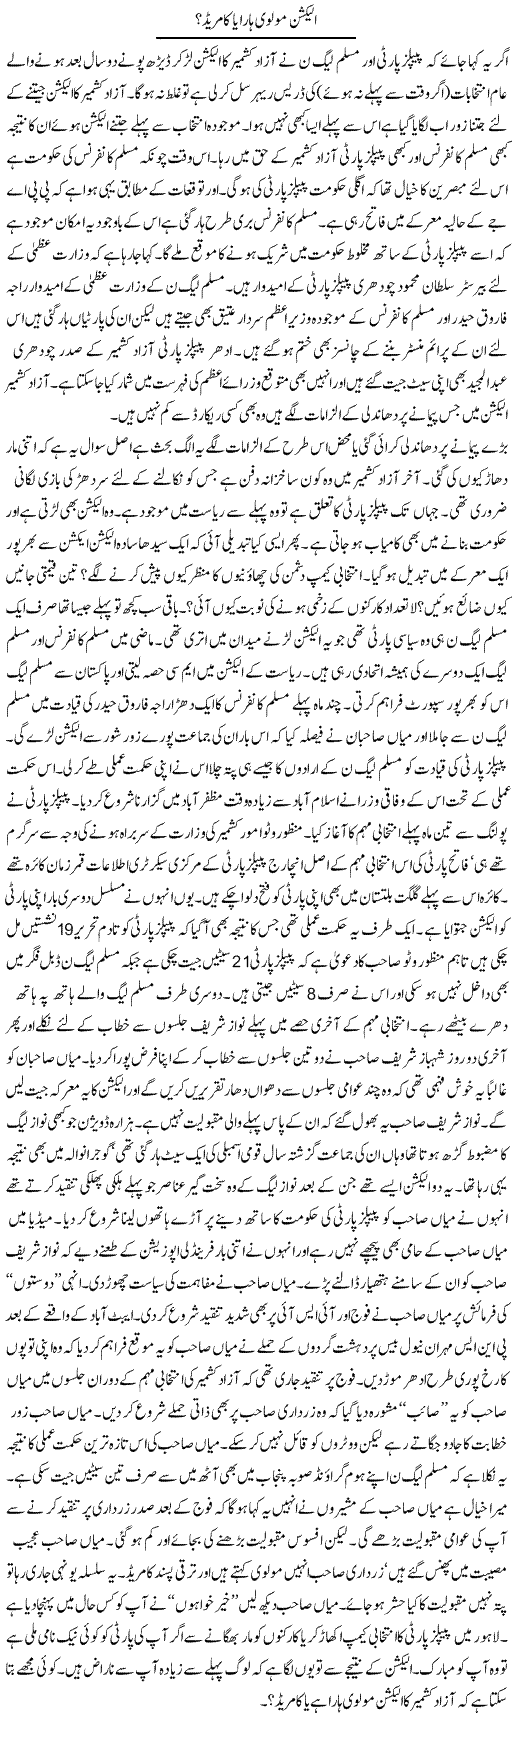 Election Molvi Express Column Iyaz Khan 28 June 2011